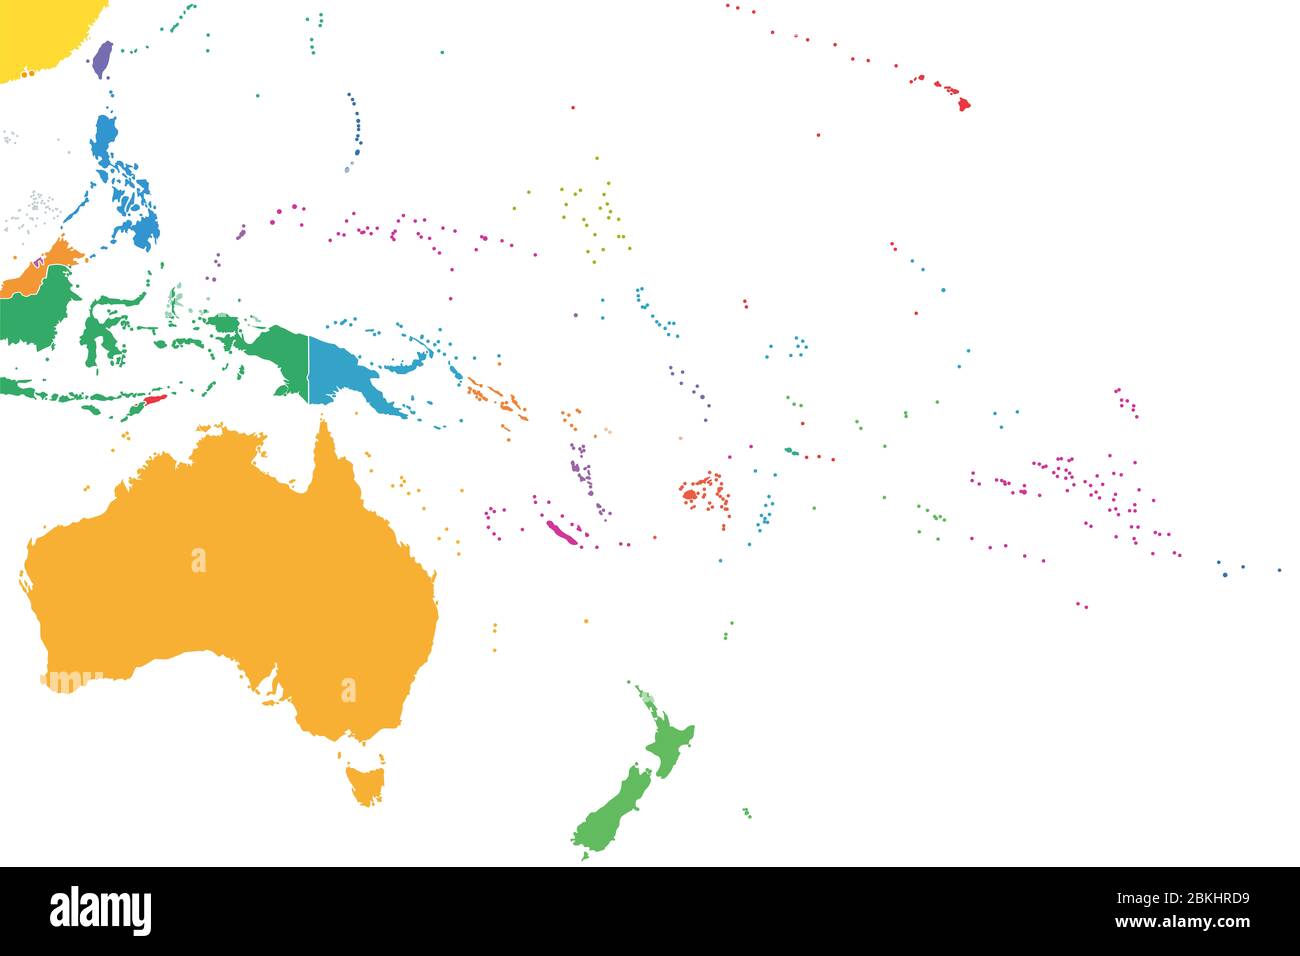 Oceania, Stati singoli colorati, mappa politica. Regione geografica, a sud-est della regione Asia-Pacifico. Australasia, Melanesia, Micronesia, Polinesia. Foto Stock